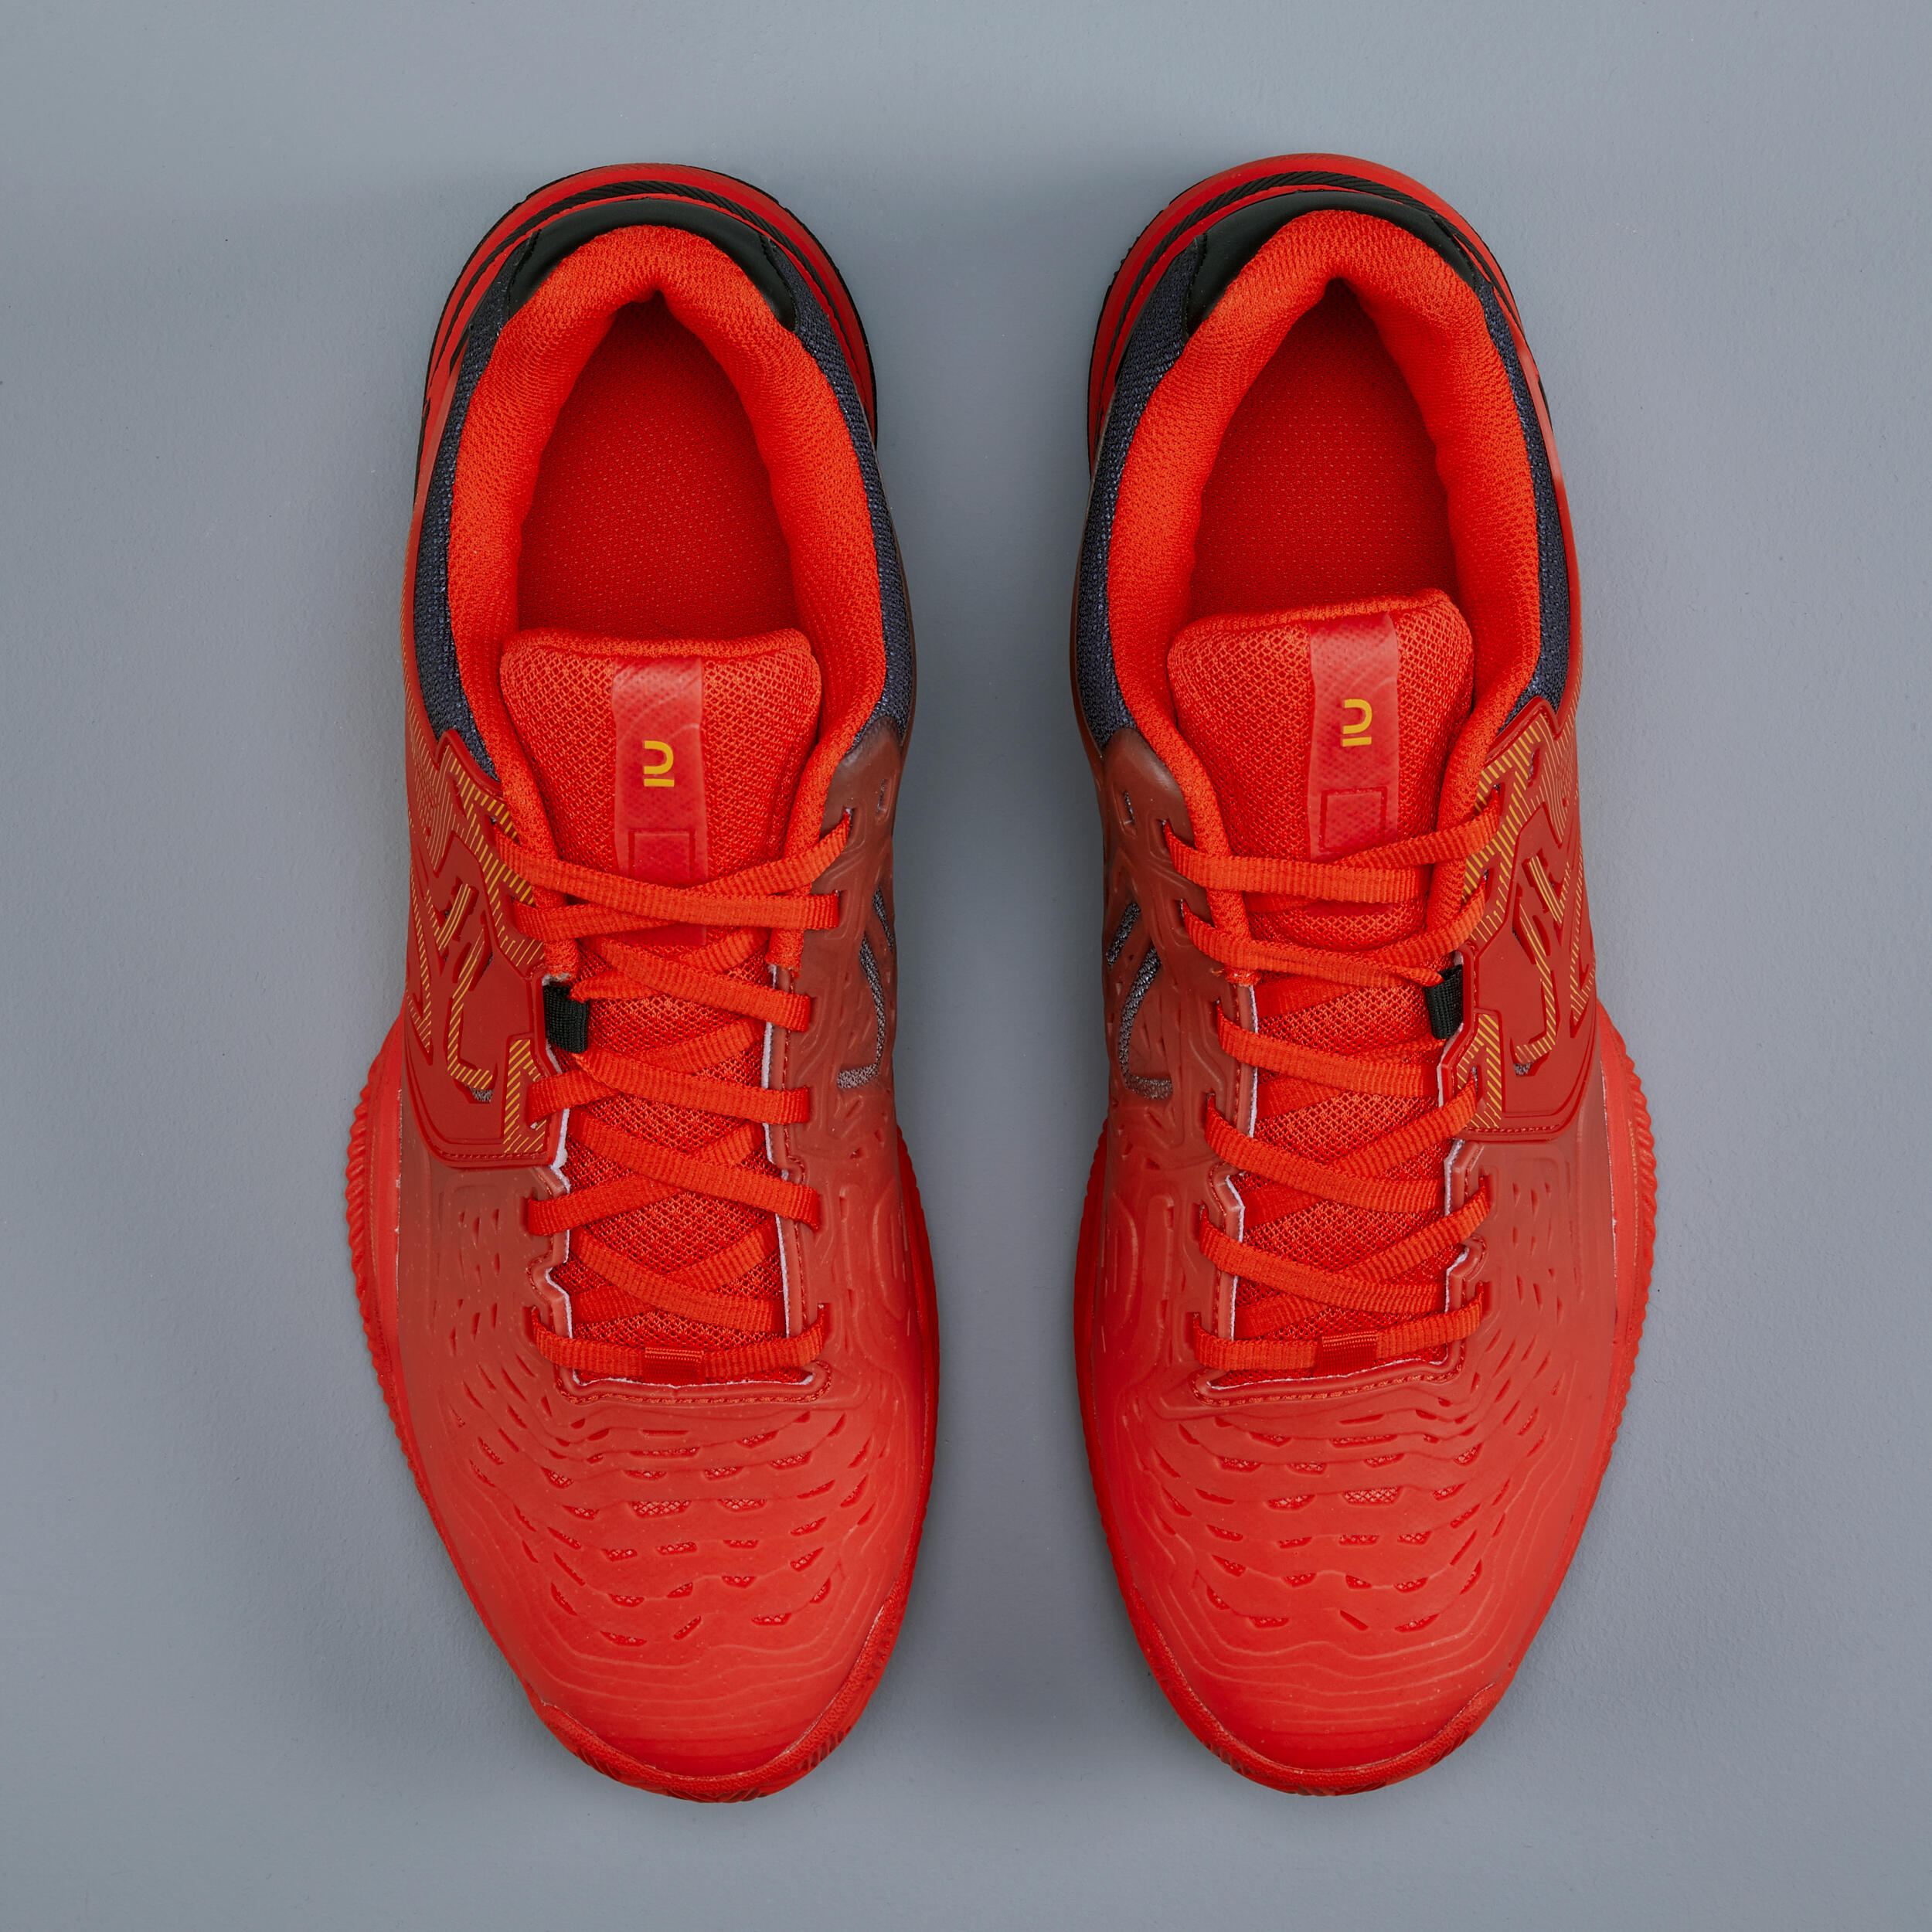 Men's Clay Court Tennis Shoes TS560 - Orange 4/4